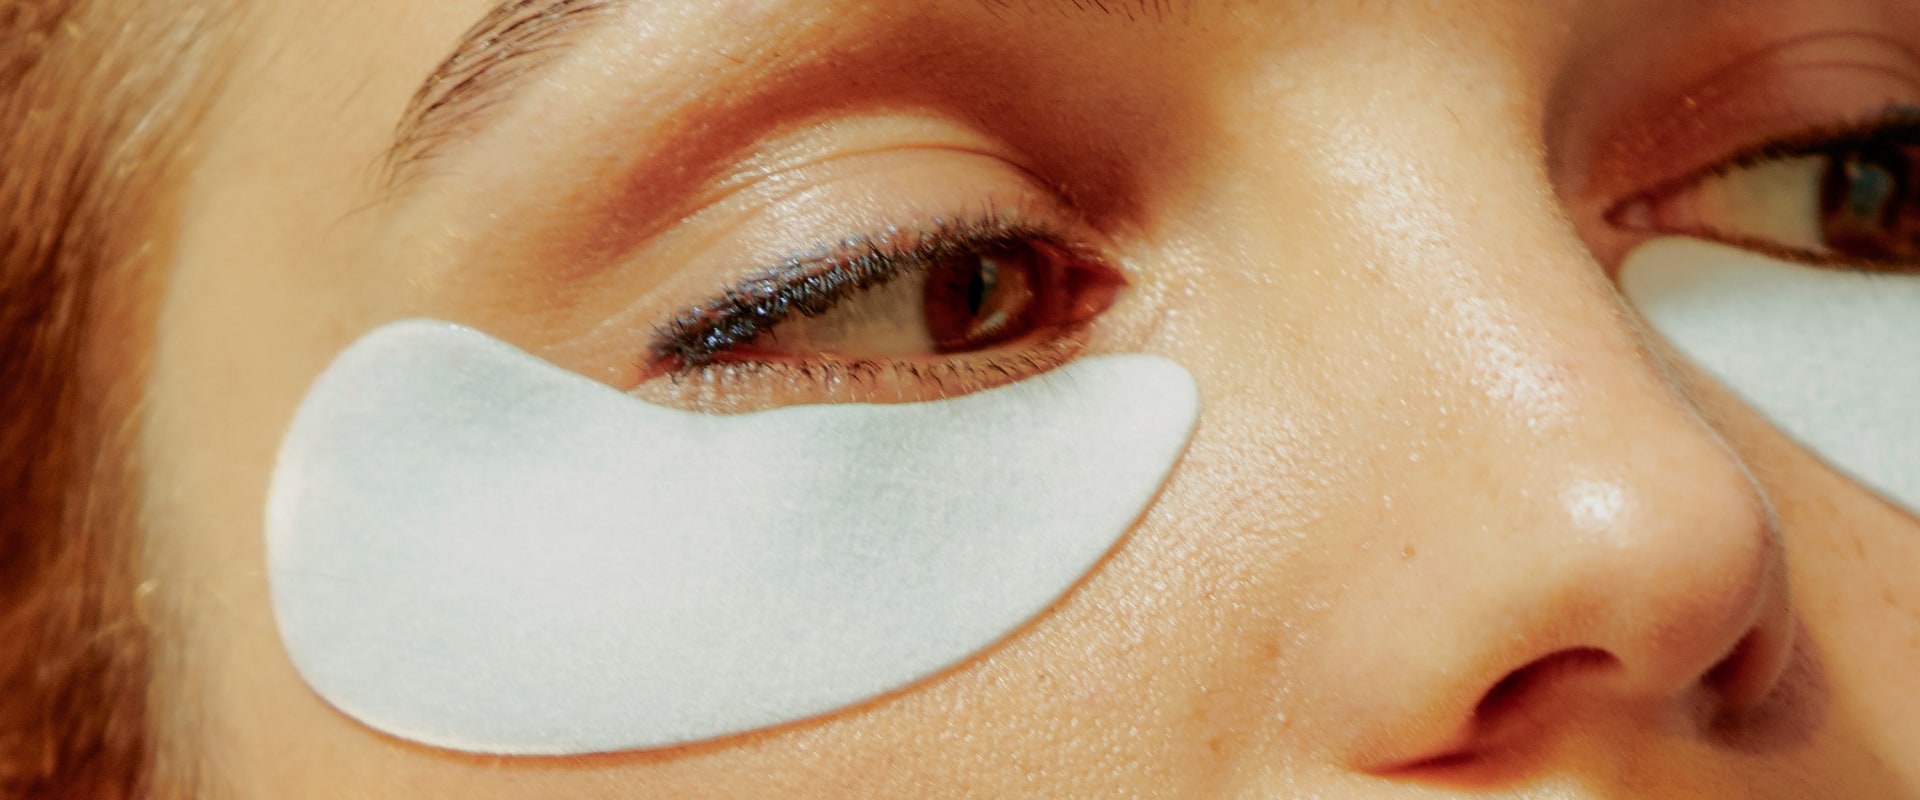 Esercizio dopo il trattamento del contorno occhi: cosa devi sapere